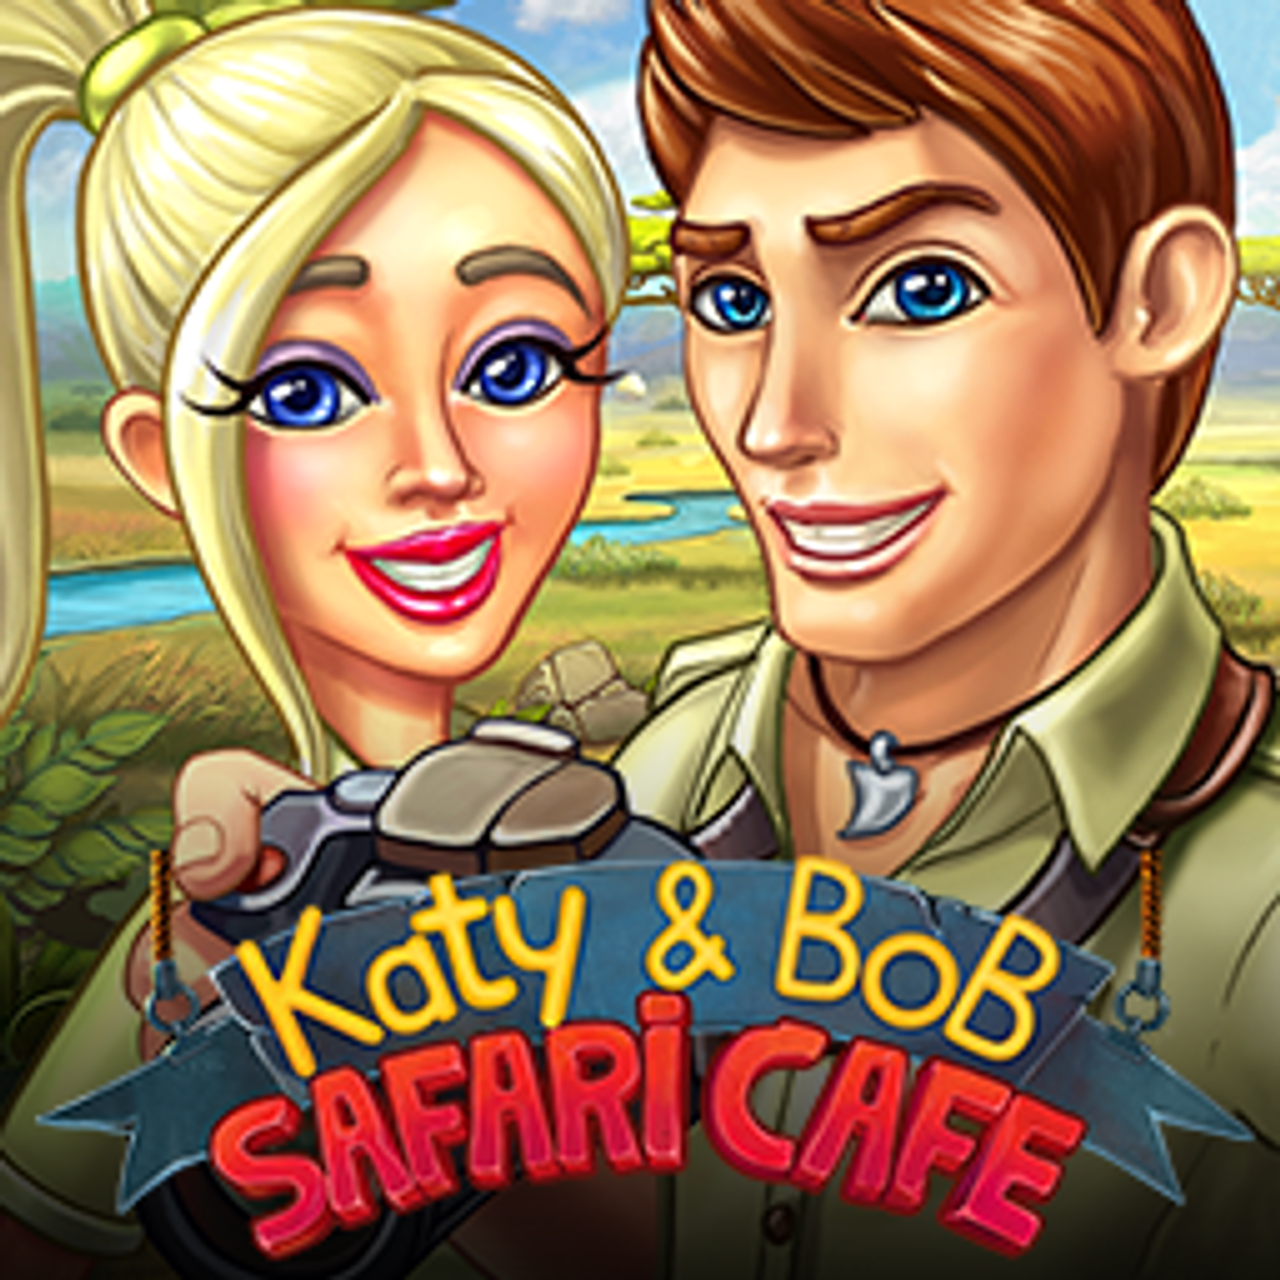 Katy and Bob Safari Cafe